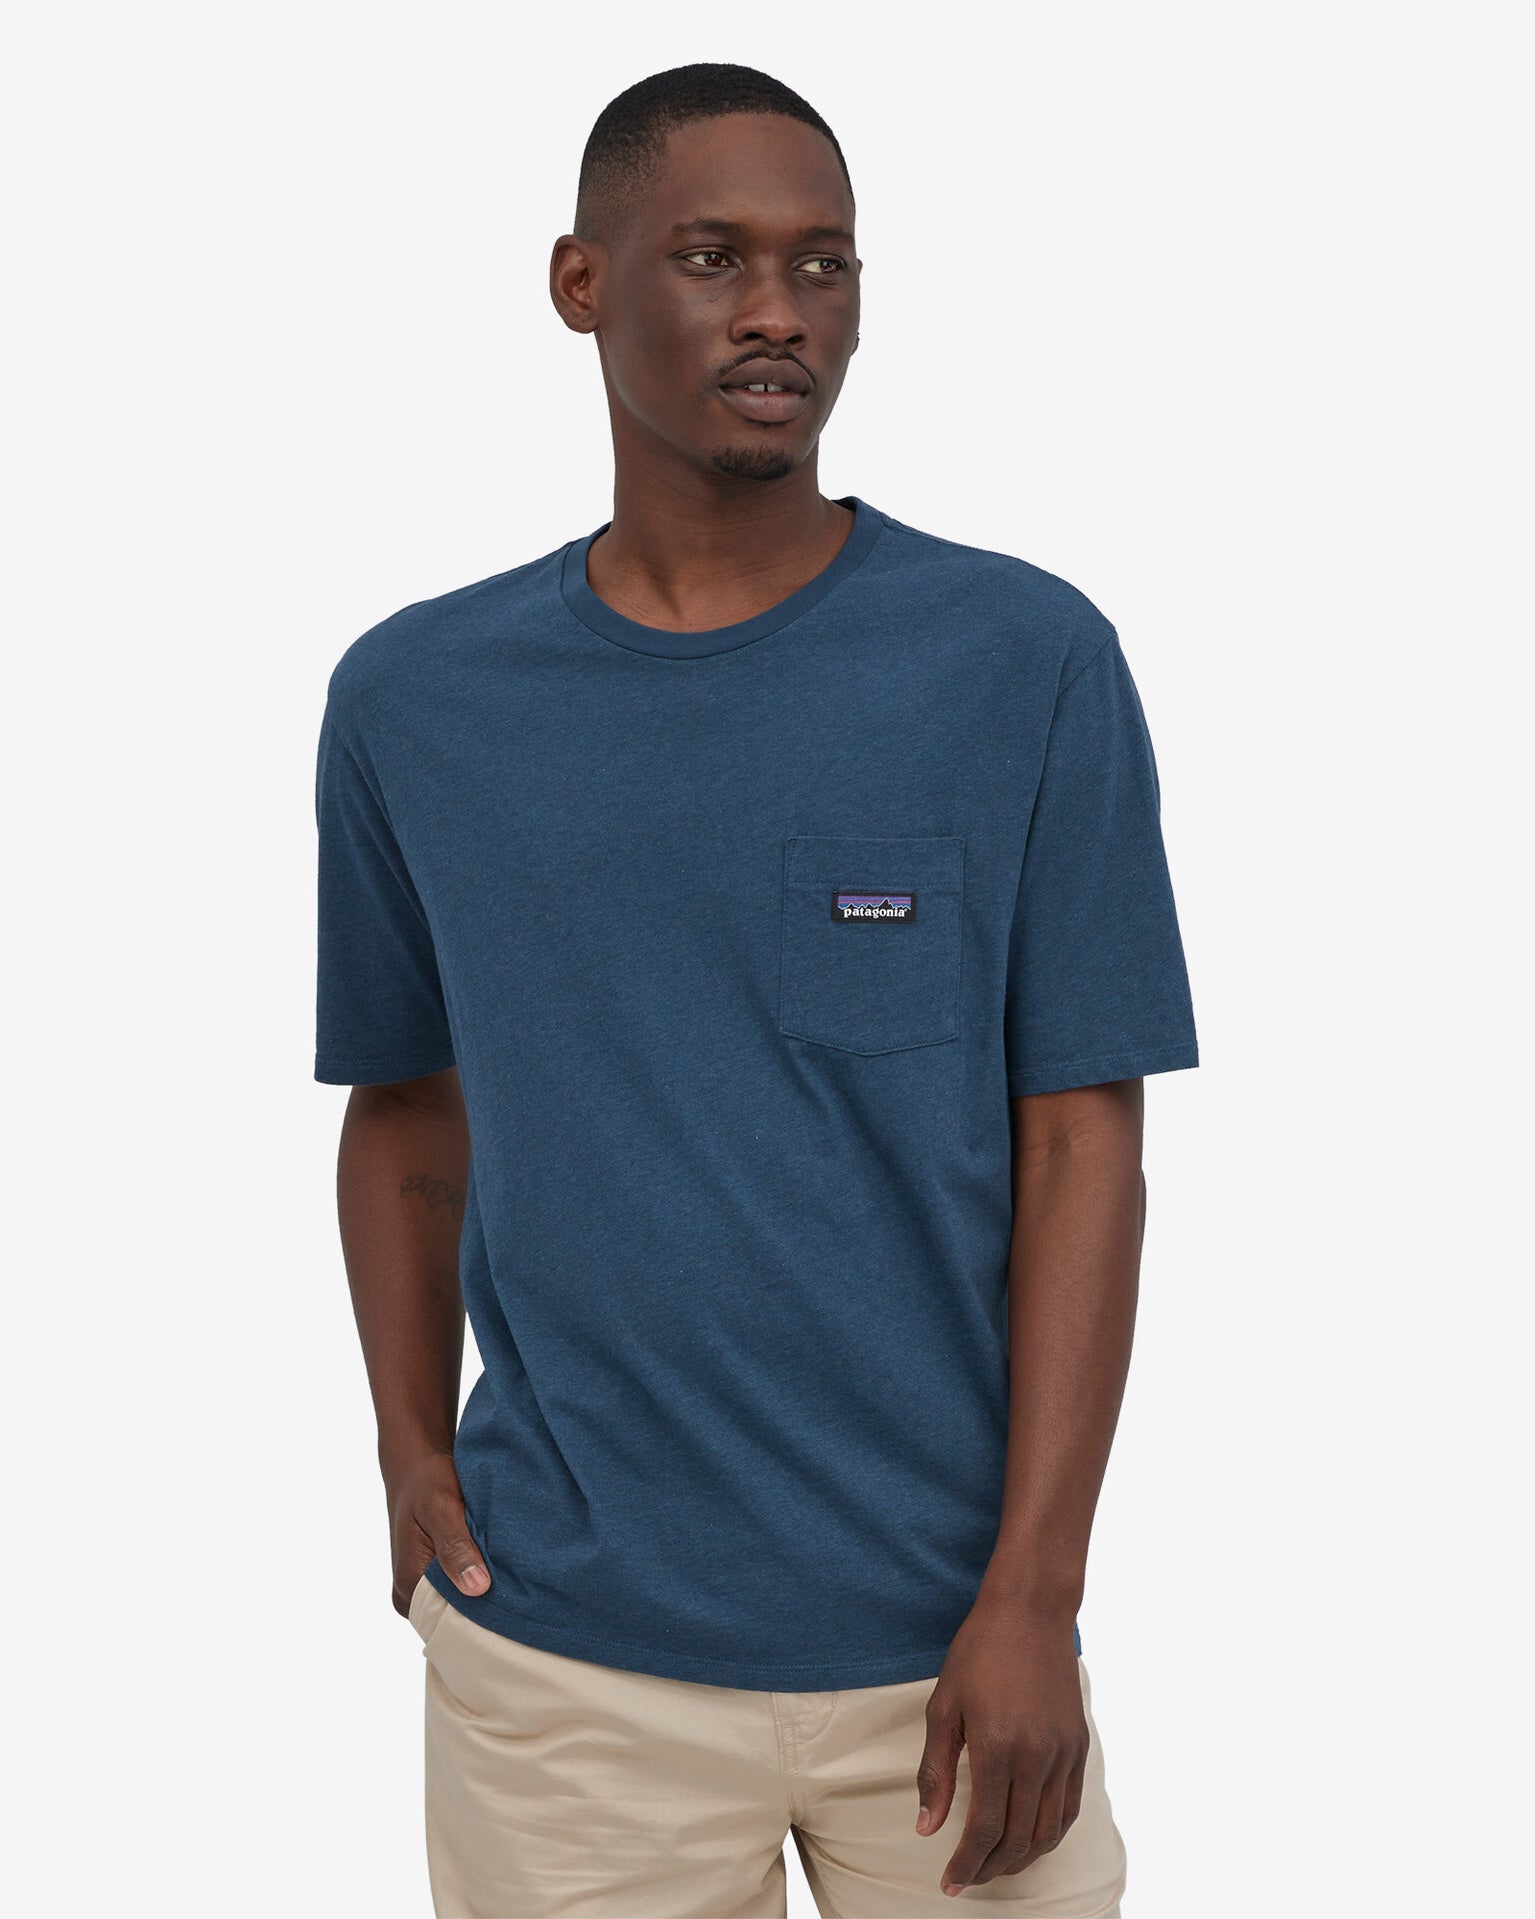 Camiseta Ms Daily Pocket Tee - Tidepool Blue (TIDB)